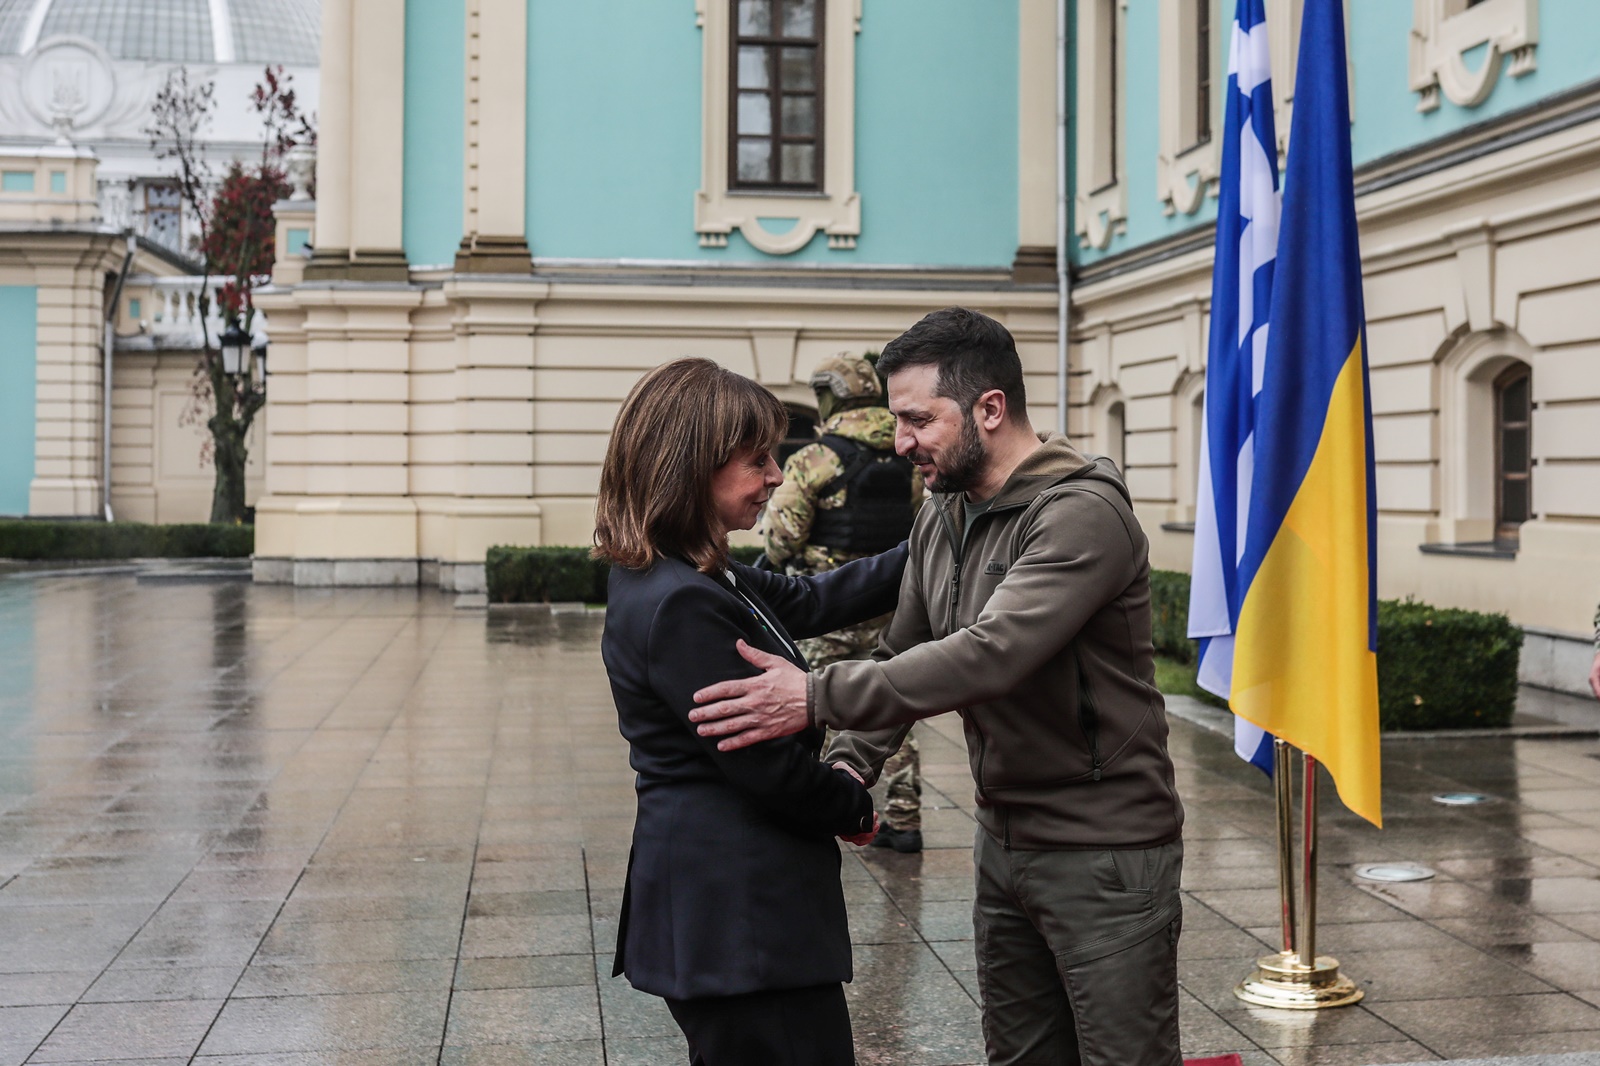 Σακελλαροπούλου Ουκρανία: «Συγκλονίστηκε με αυτά που είδε», είπε ο δήμαρχος του Ιρπίν